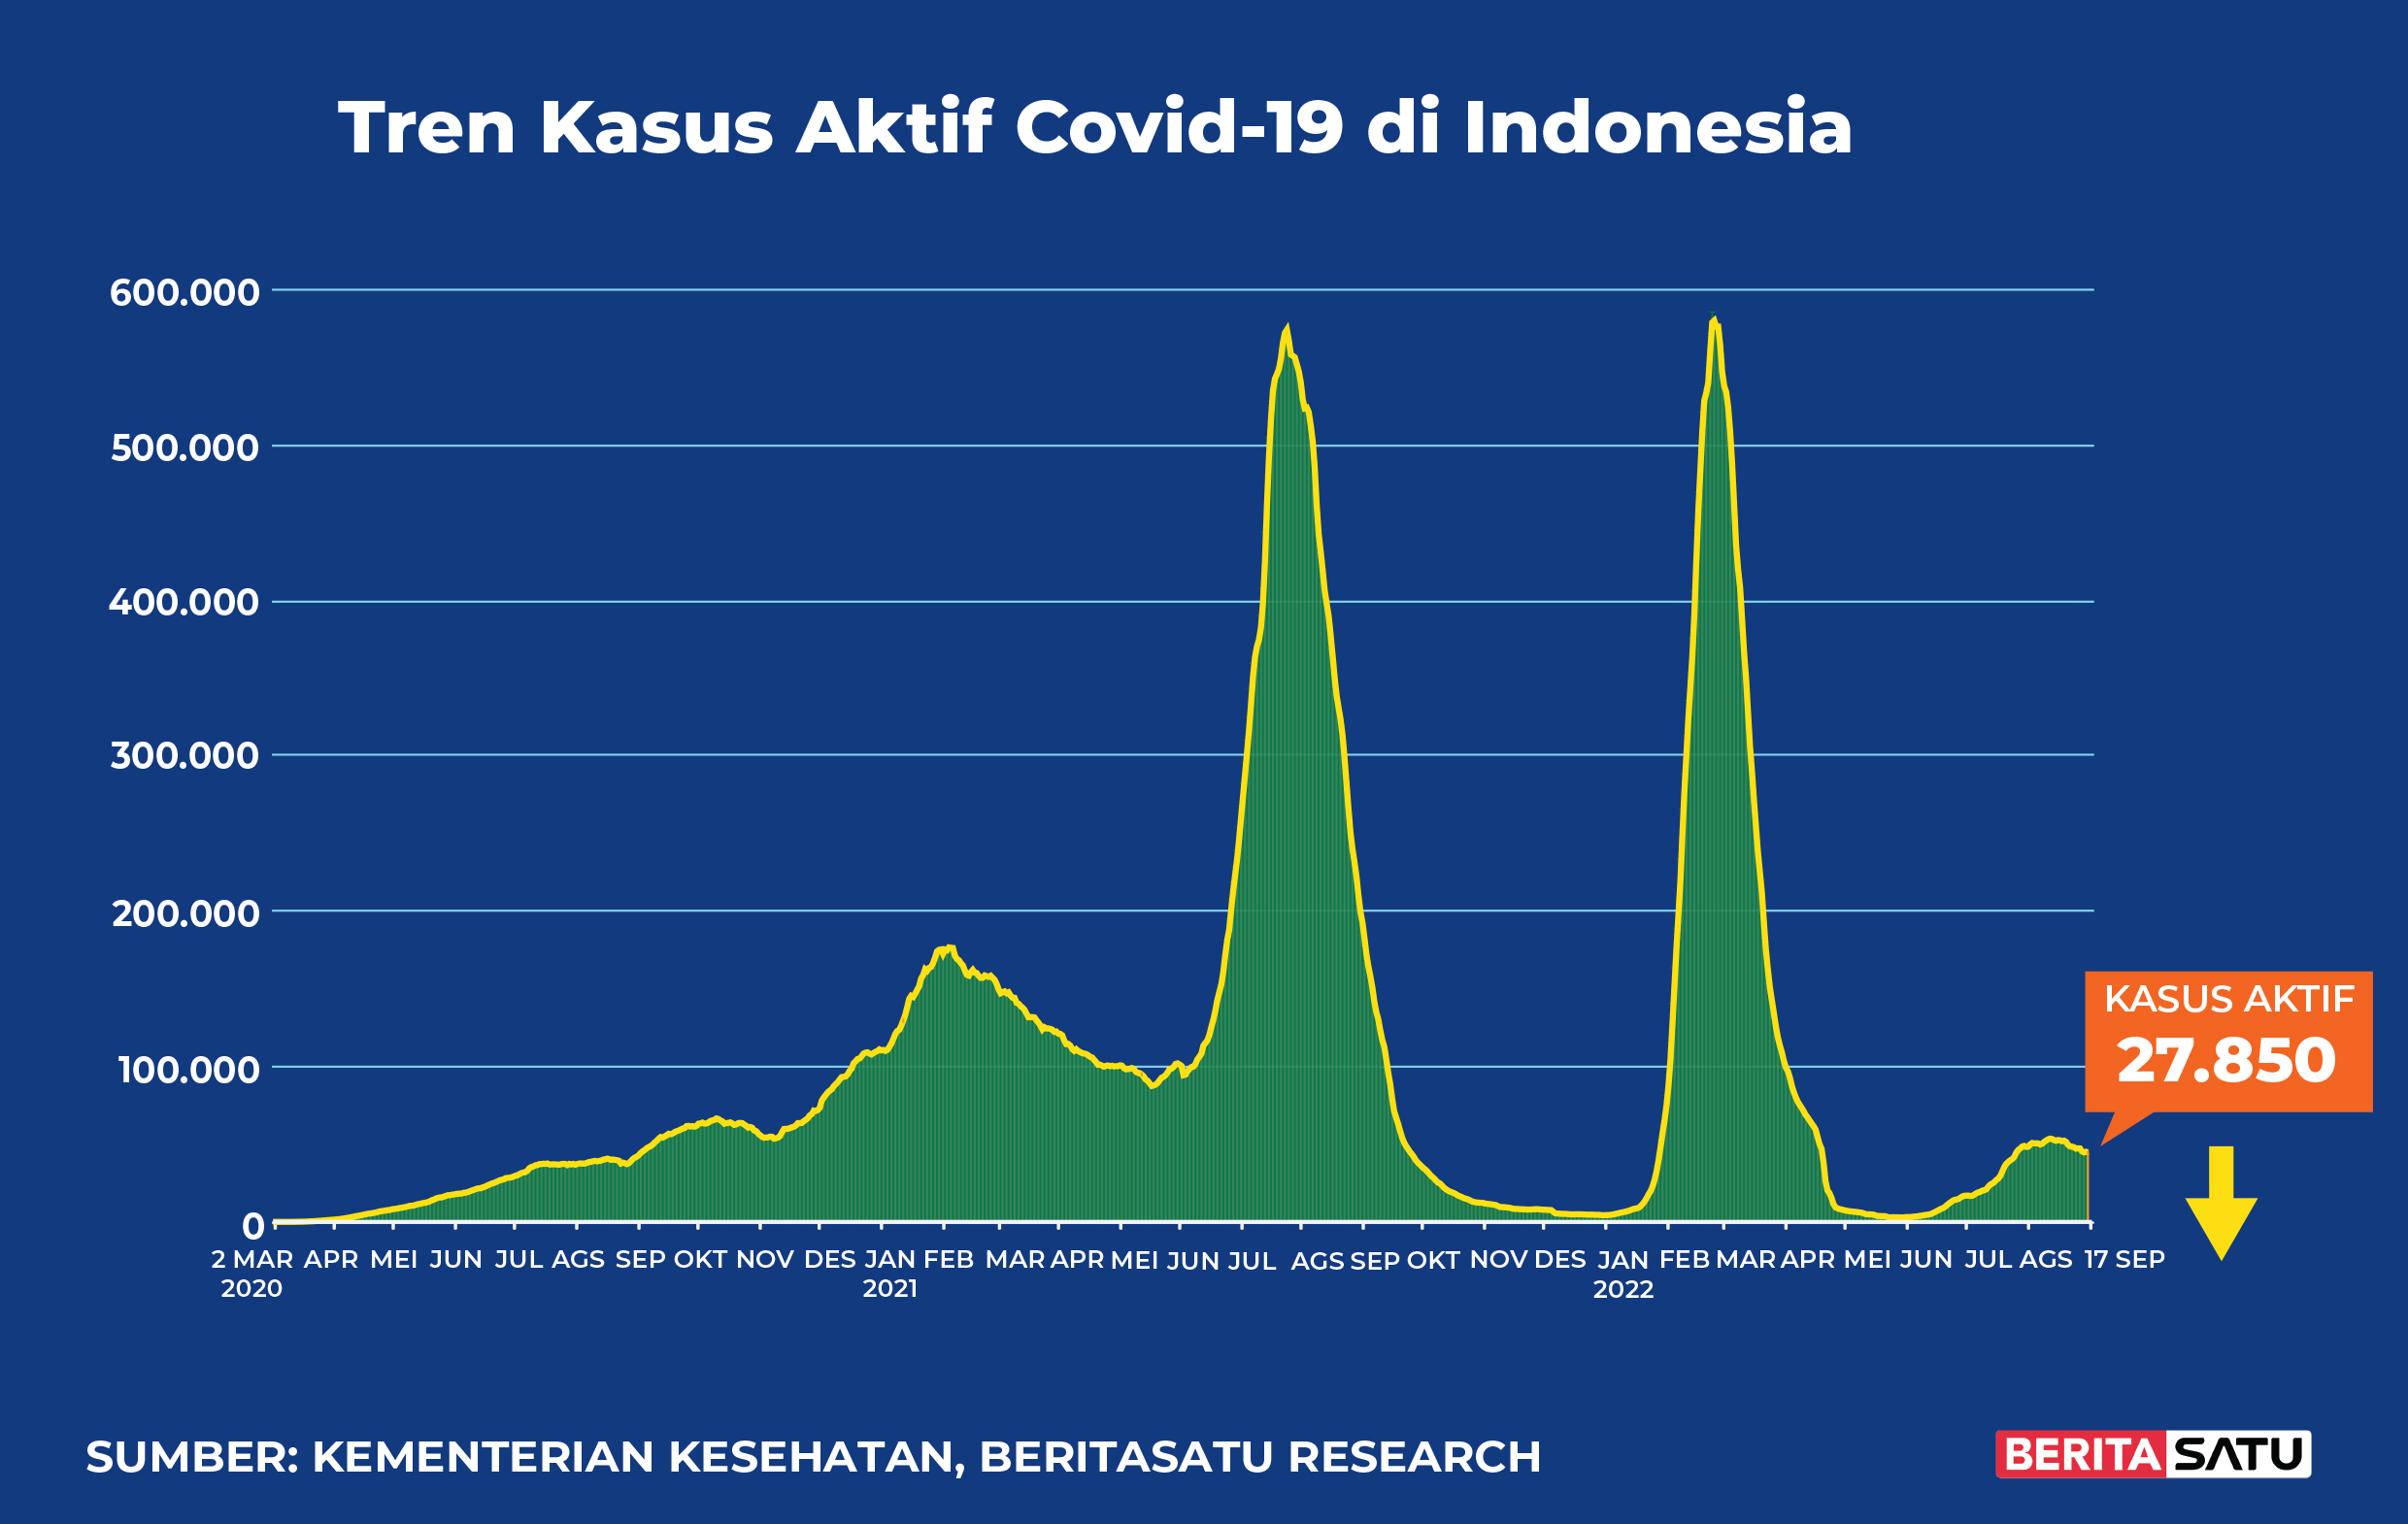 Kasus Aktif Covid-19 di Indonesia sampai 17 September 2022